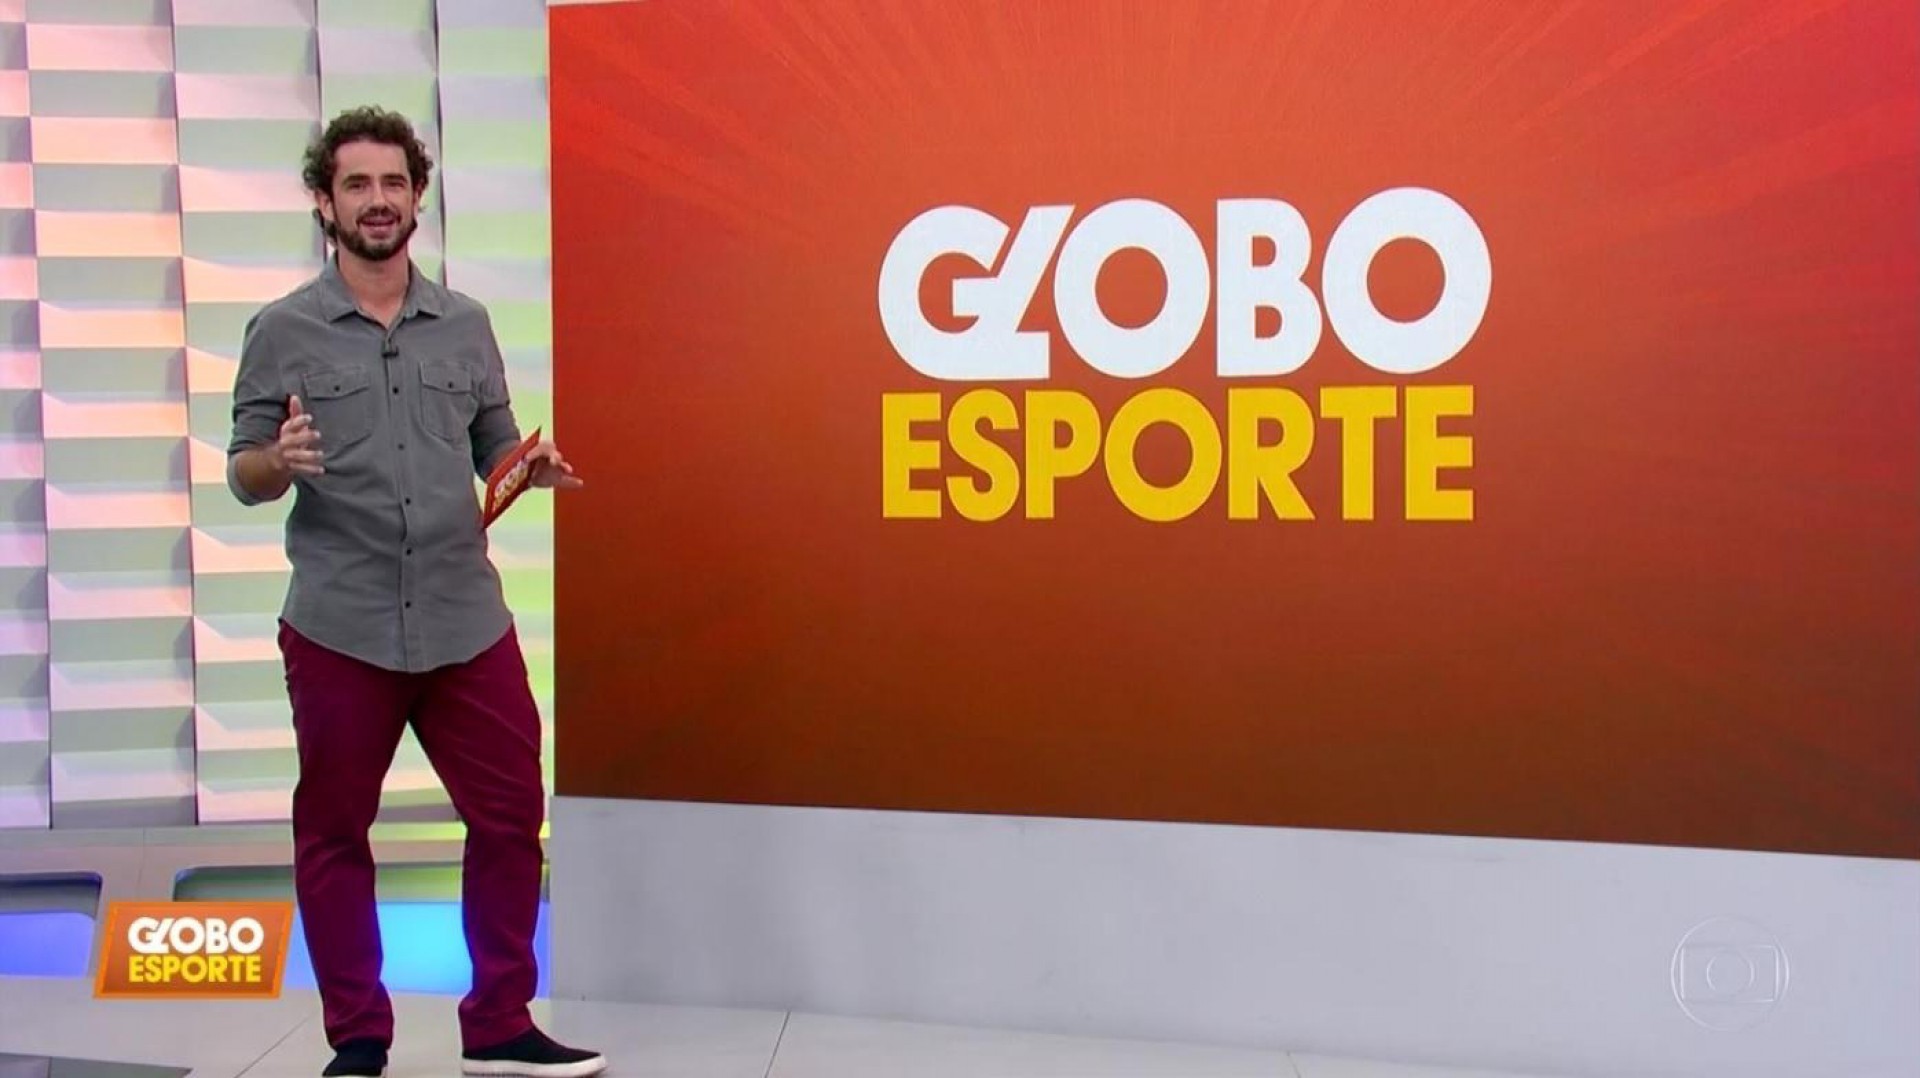 Apresentador do Globo Esporte é afastado após sentir dor de